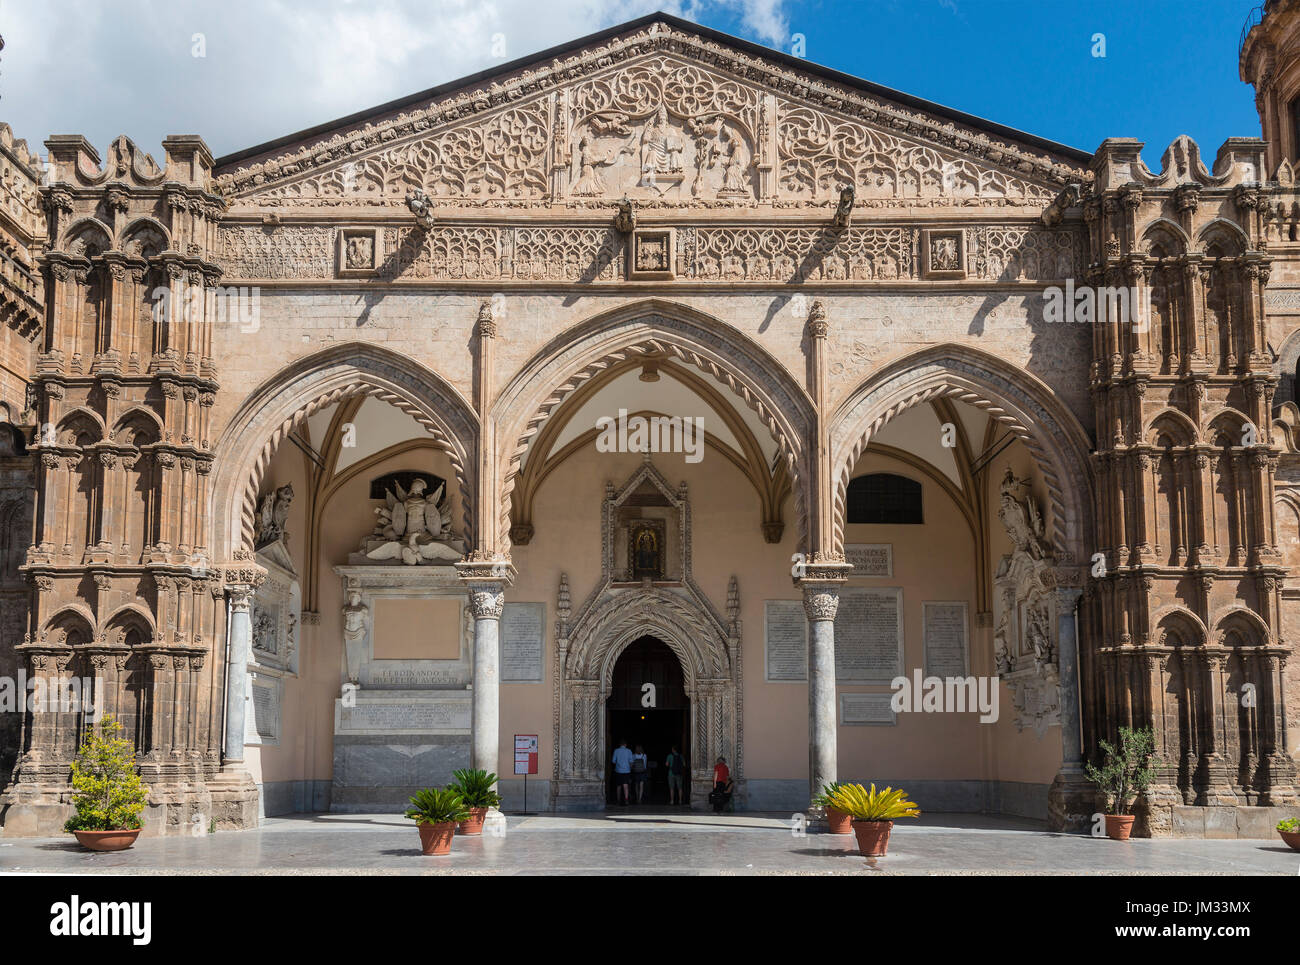 Le portique gothique et l'entrée principale de la cathédrale dans le centre de Palerme, Sicile, Italie. Banque D'Images